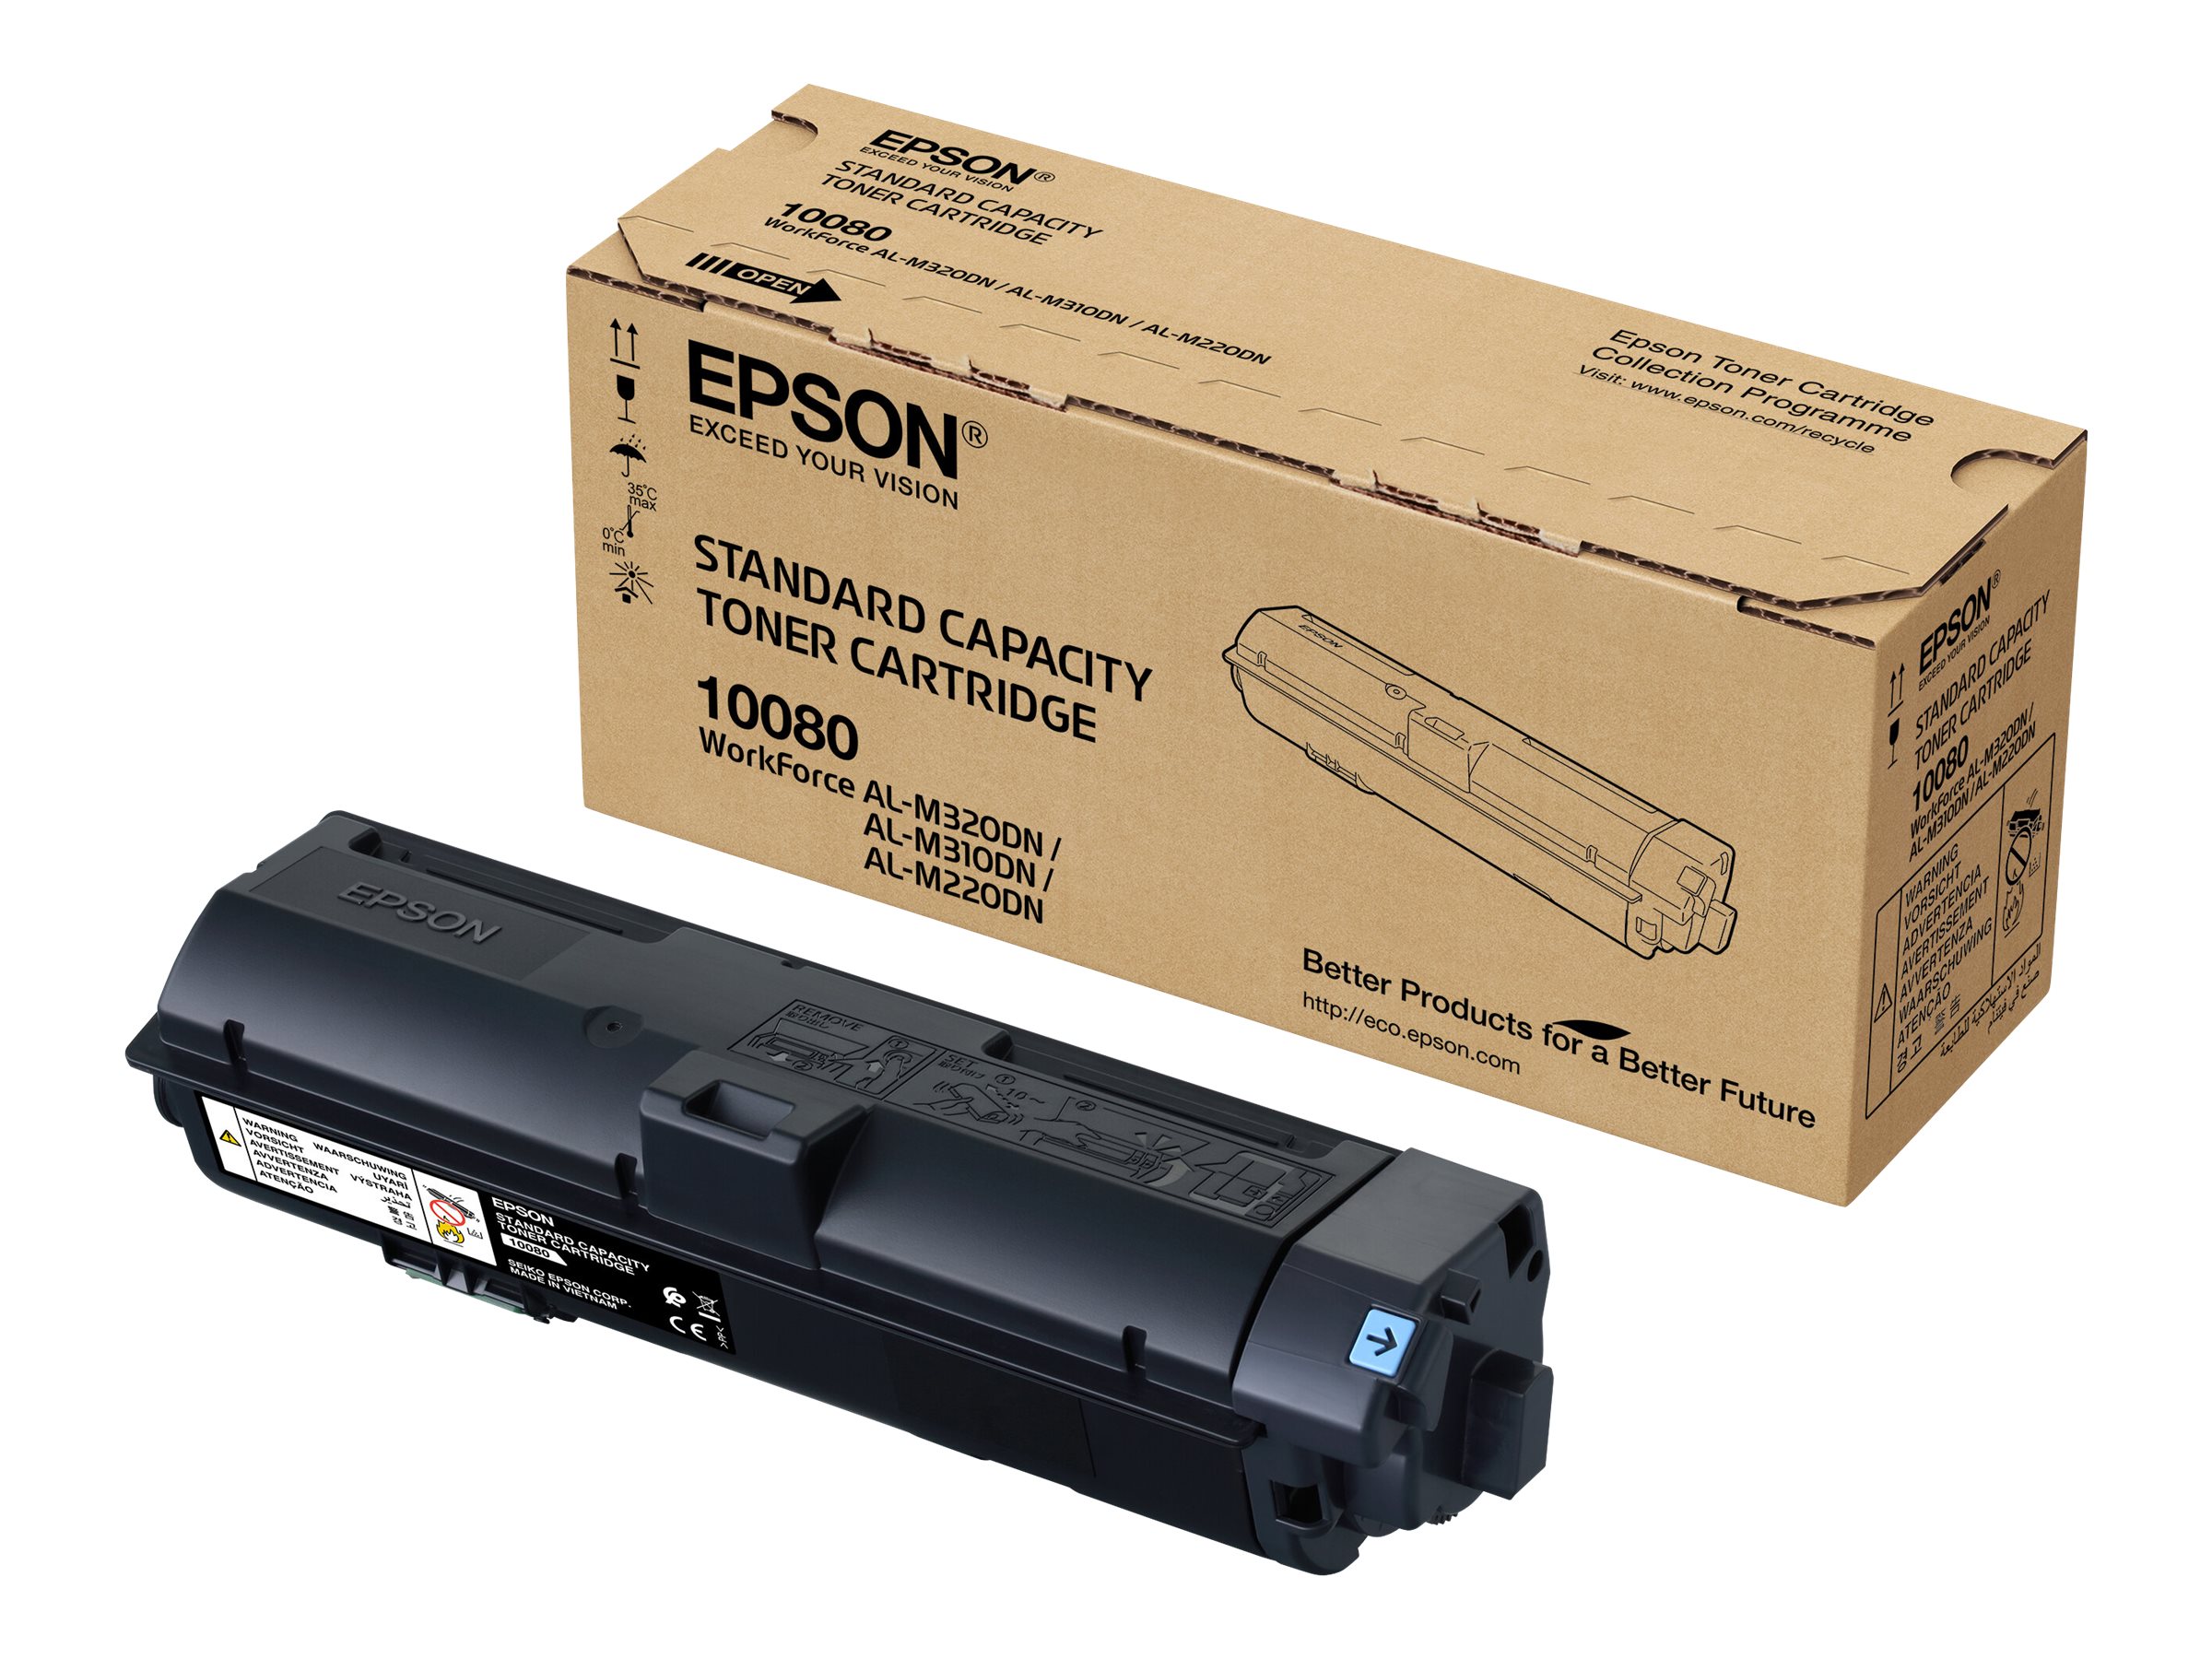 Epson S110080 - Noir - original - cartouche de toner - pour WorkForce AL-M310DN, AL-M310DTN, AL-M320DN, AL-M320DTN - C13S110080 - Cartouches de toner Epson